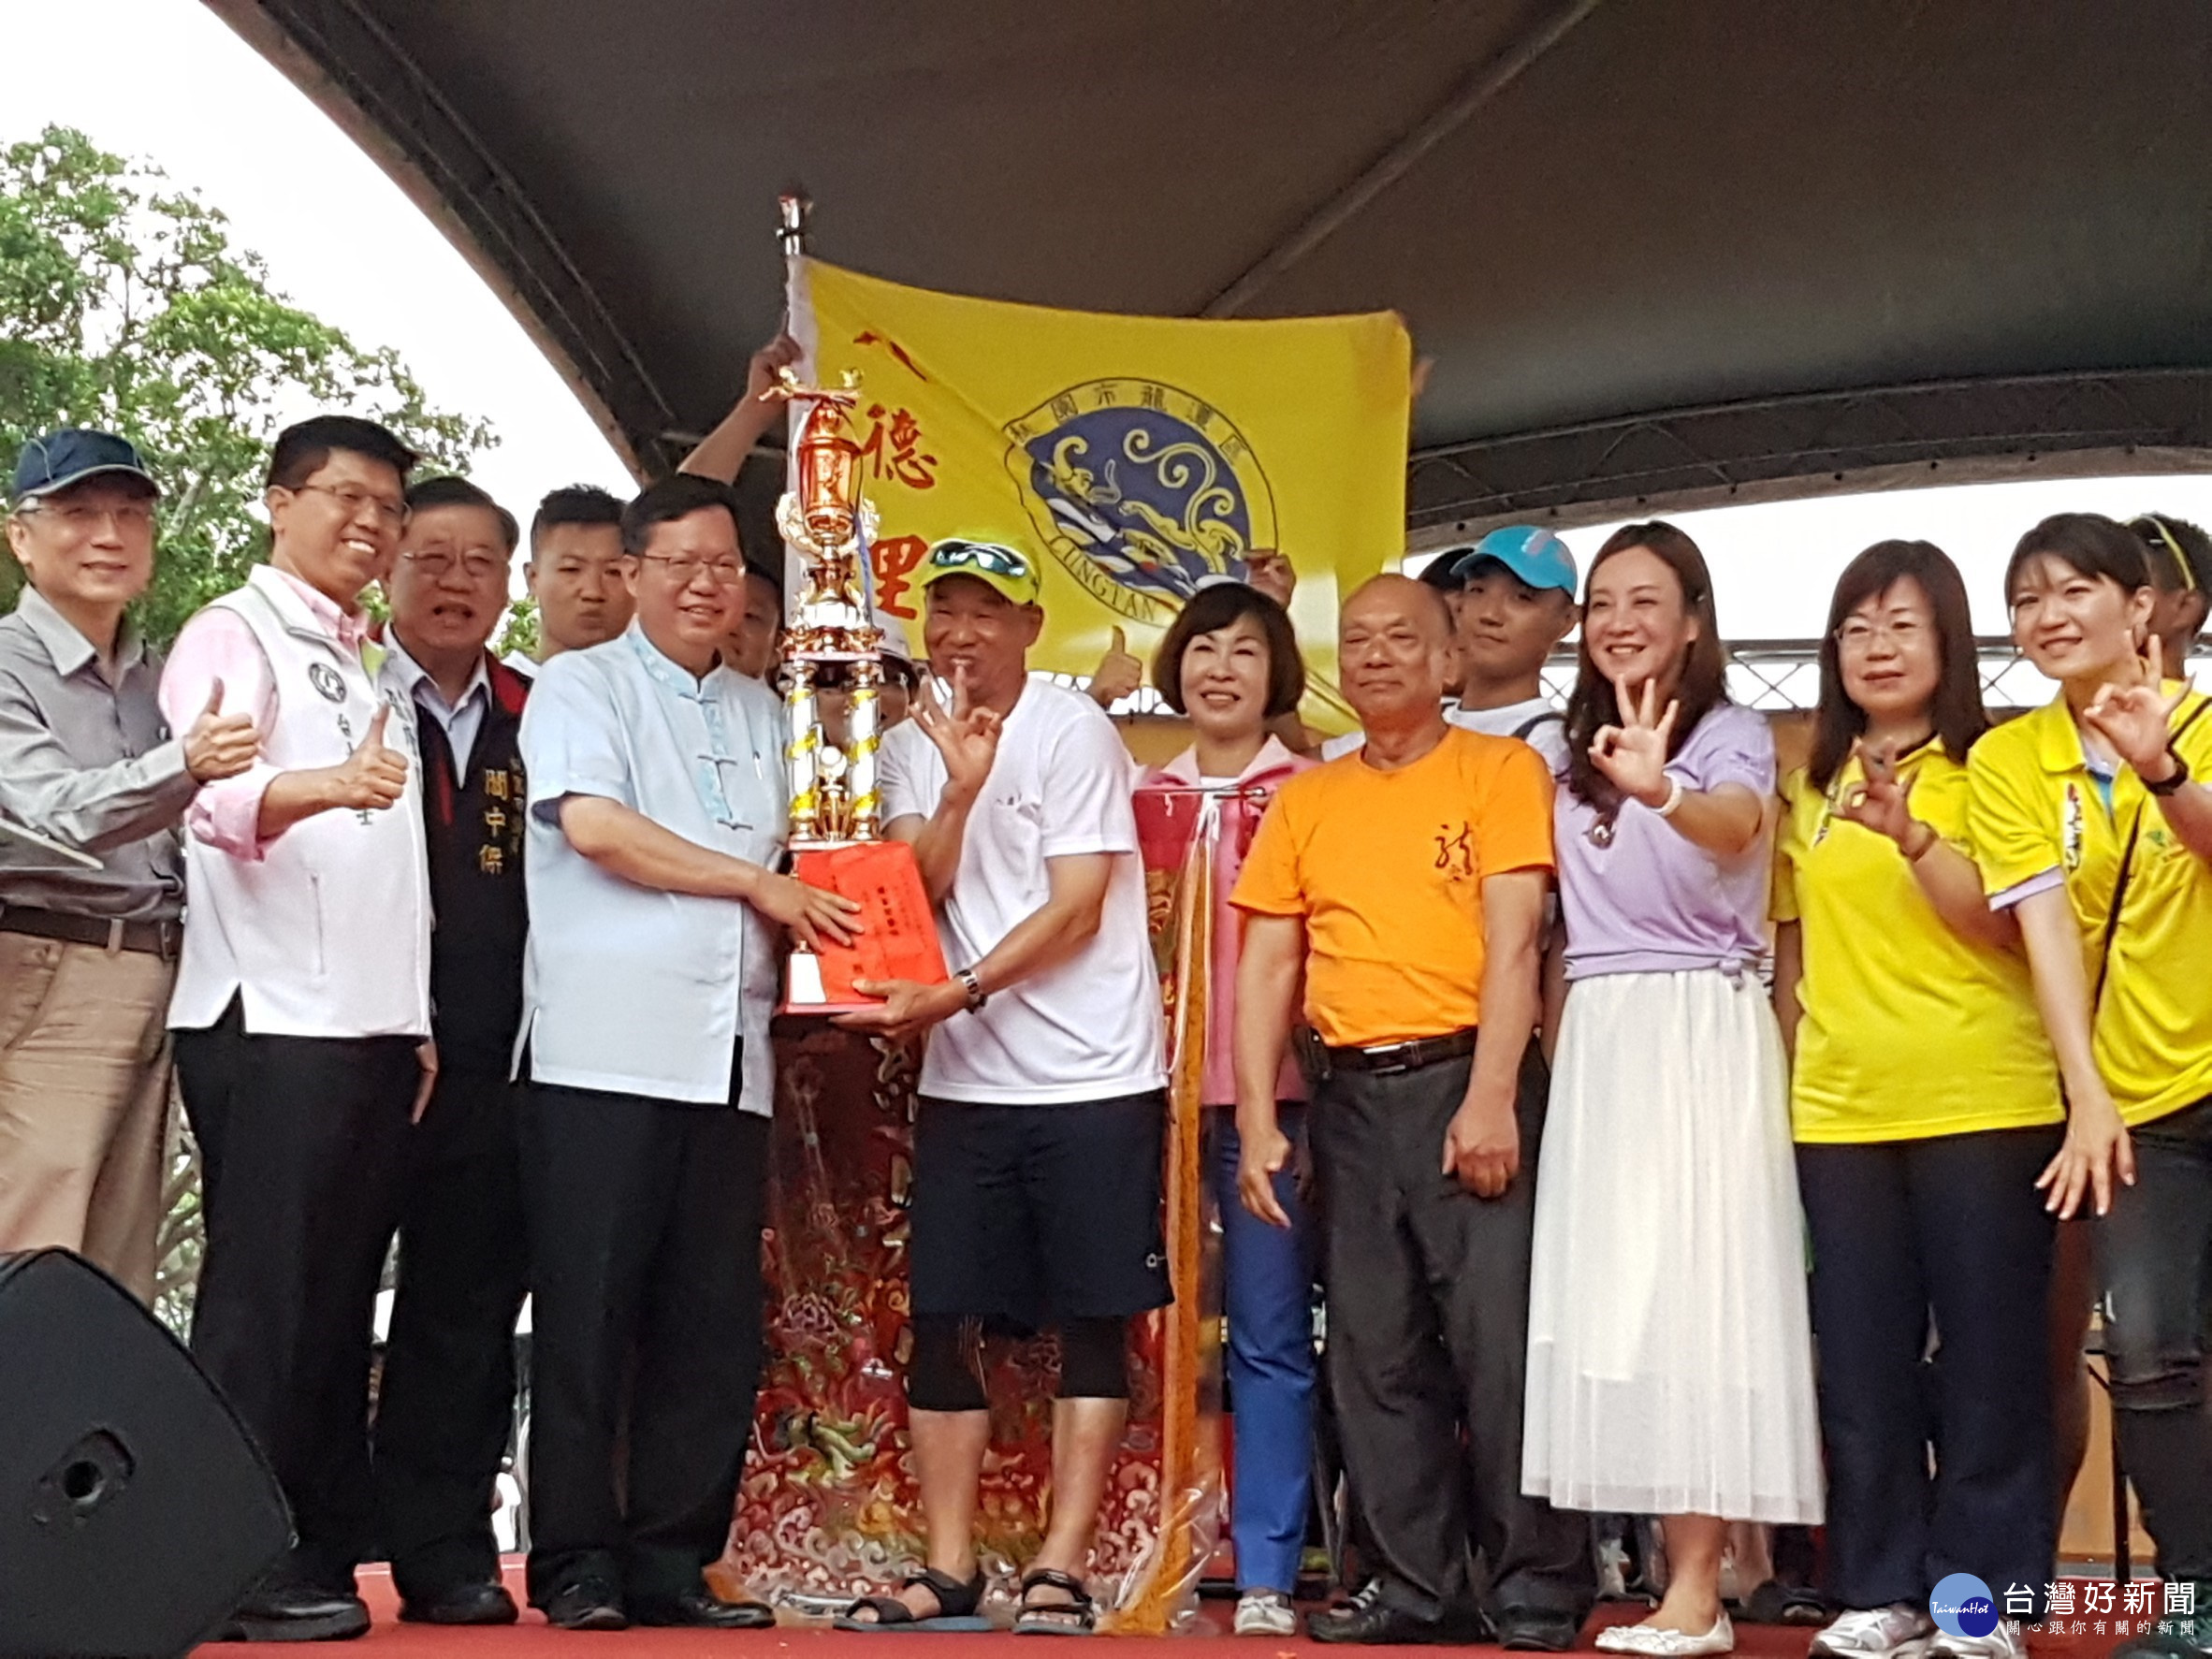 里別組總冠軍由龍潭區八德里獲得3連霸，由鄭文燦市長頒獎。